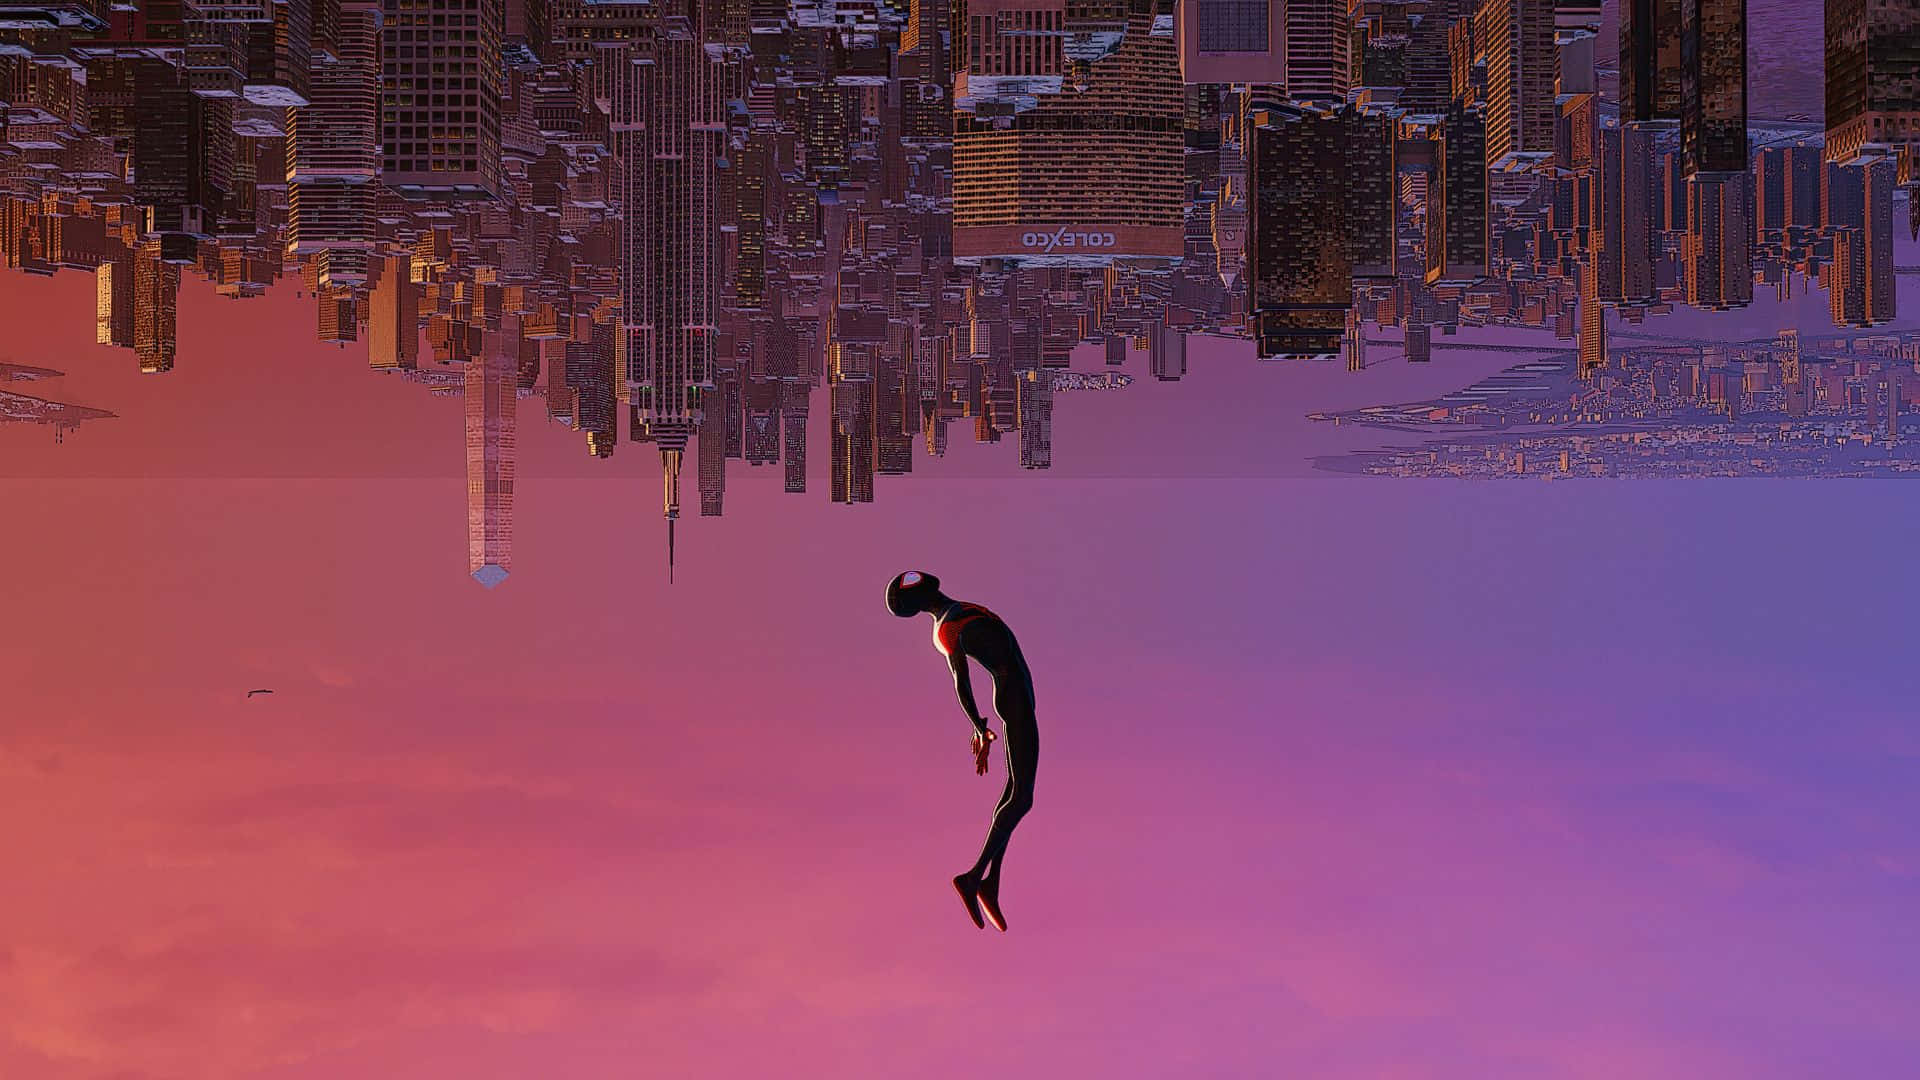 En mand flyver i luften over en by skyline.